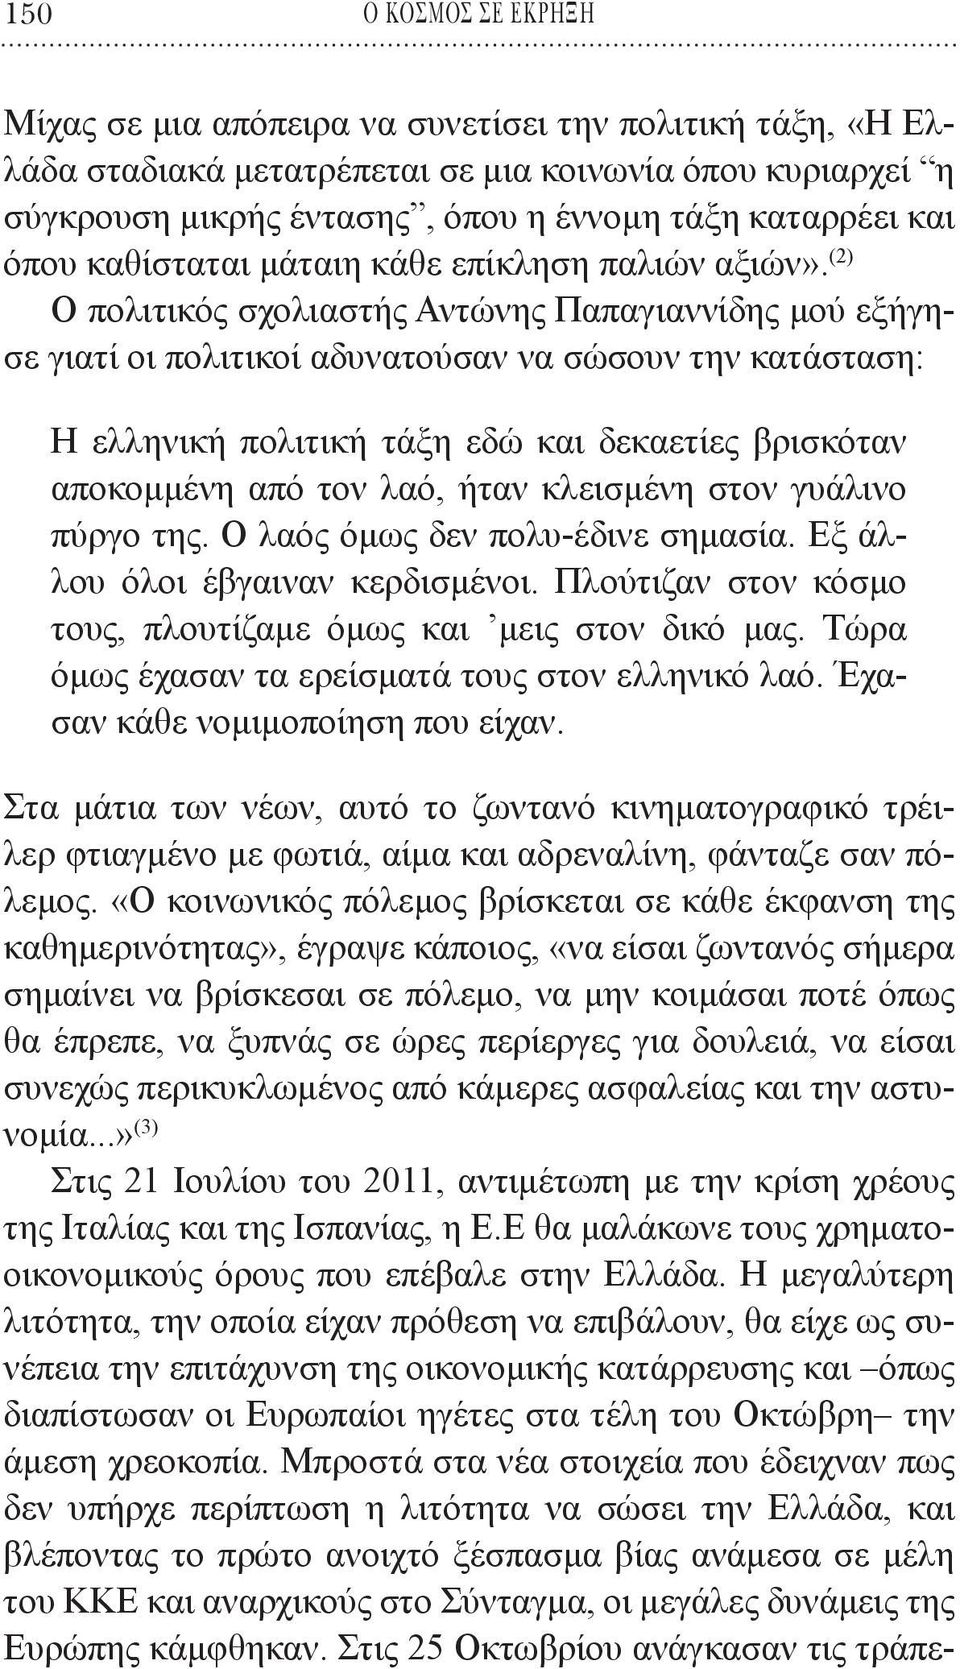 (2) Ο πολιτικός σχολιαστής Αντώνης Παπαγιαννίδης μού εξήγησε γιατί οι πολιτικοί αδυνατούσαν να σώσουν την κατάσταση: Η ελληνική πολιτική τάξη εδώ και δεκαετίες βρισκόταν αποκομμένη από τον λαό, ήταν